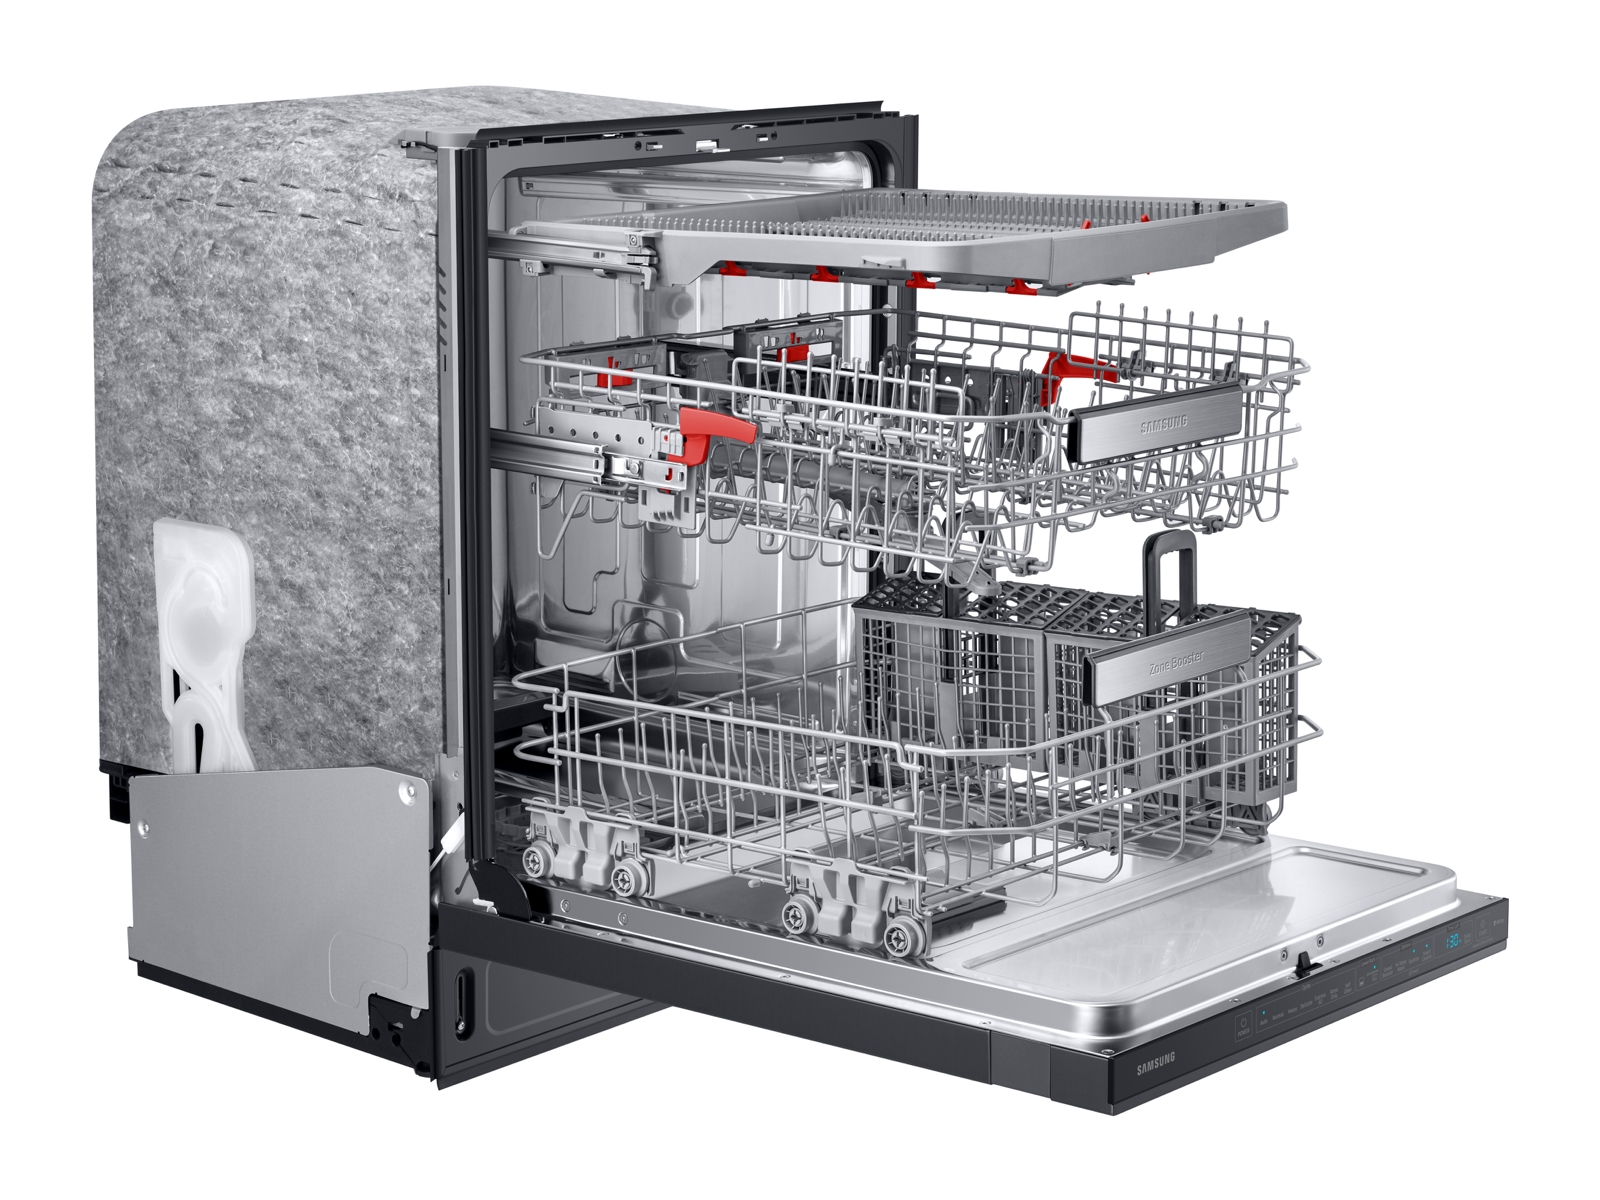 Black Side Mountable Dishwashers